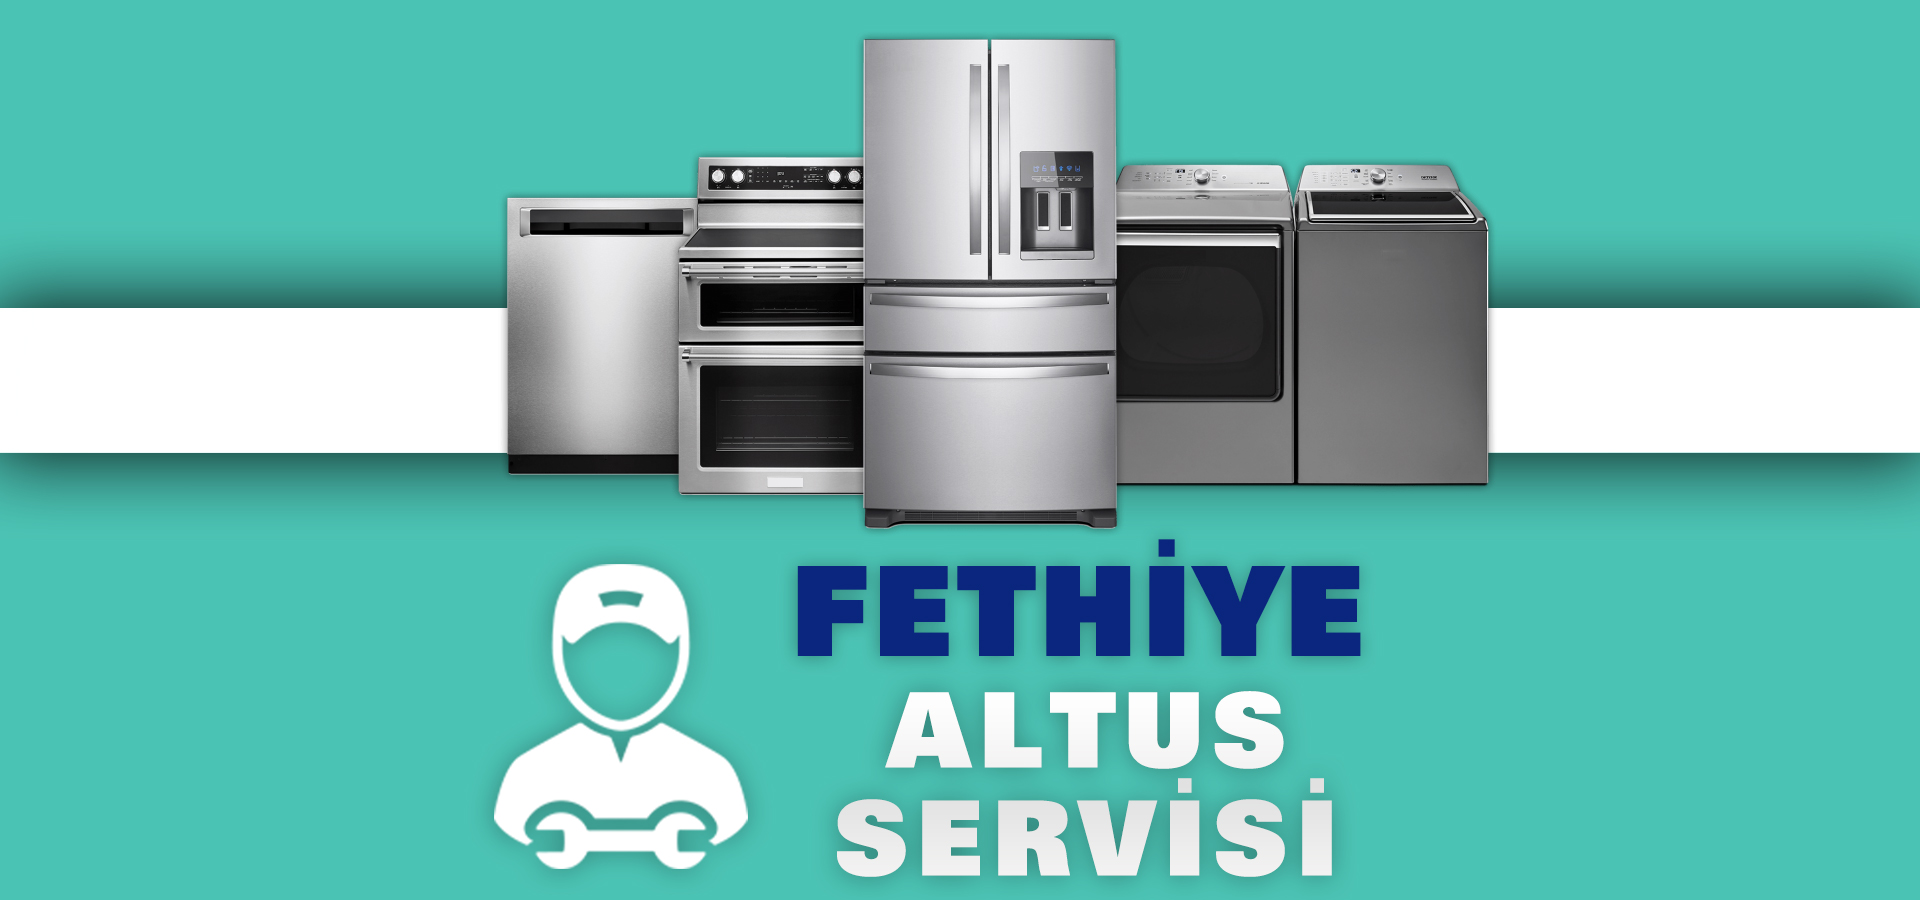 Fethiye Altus Servisi